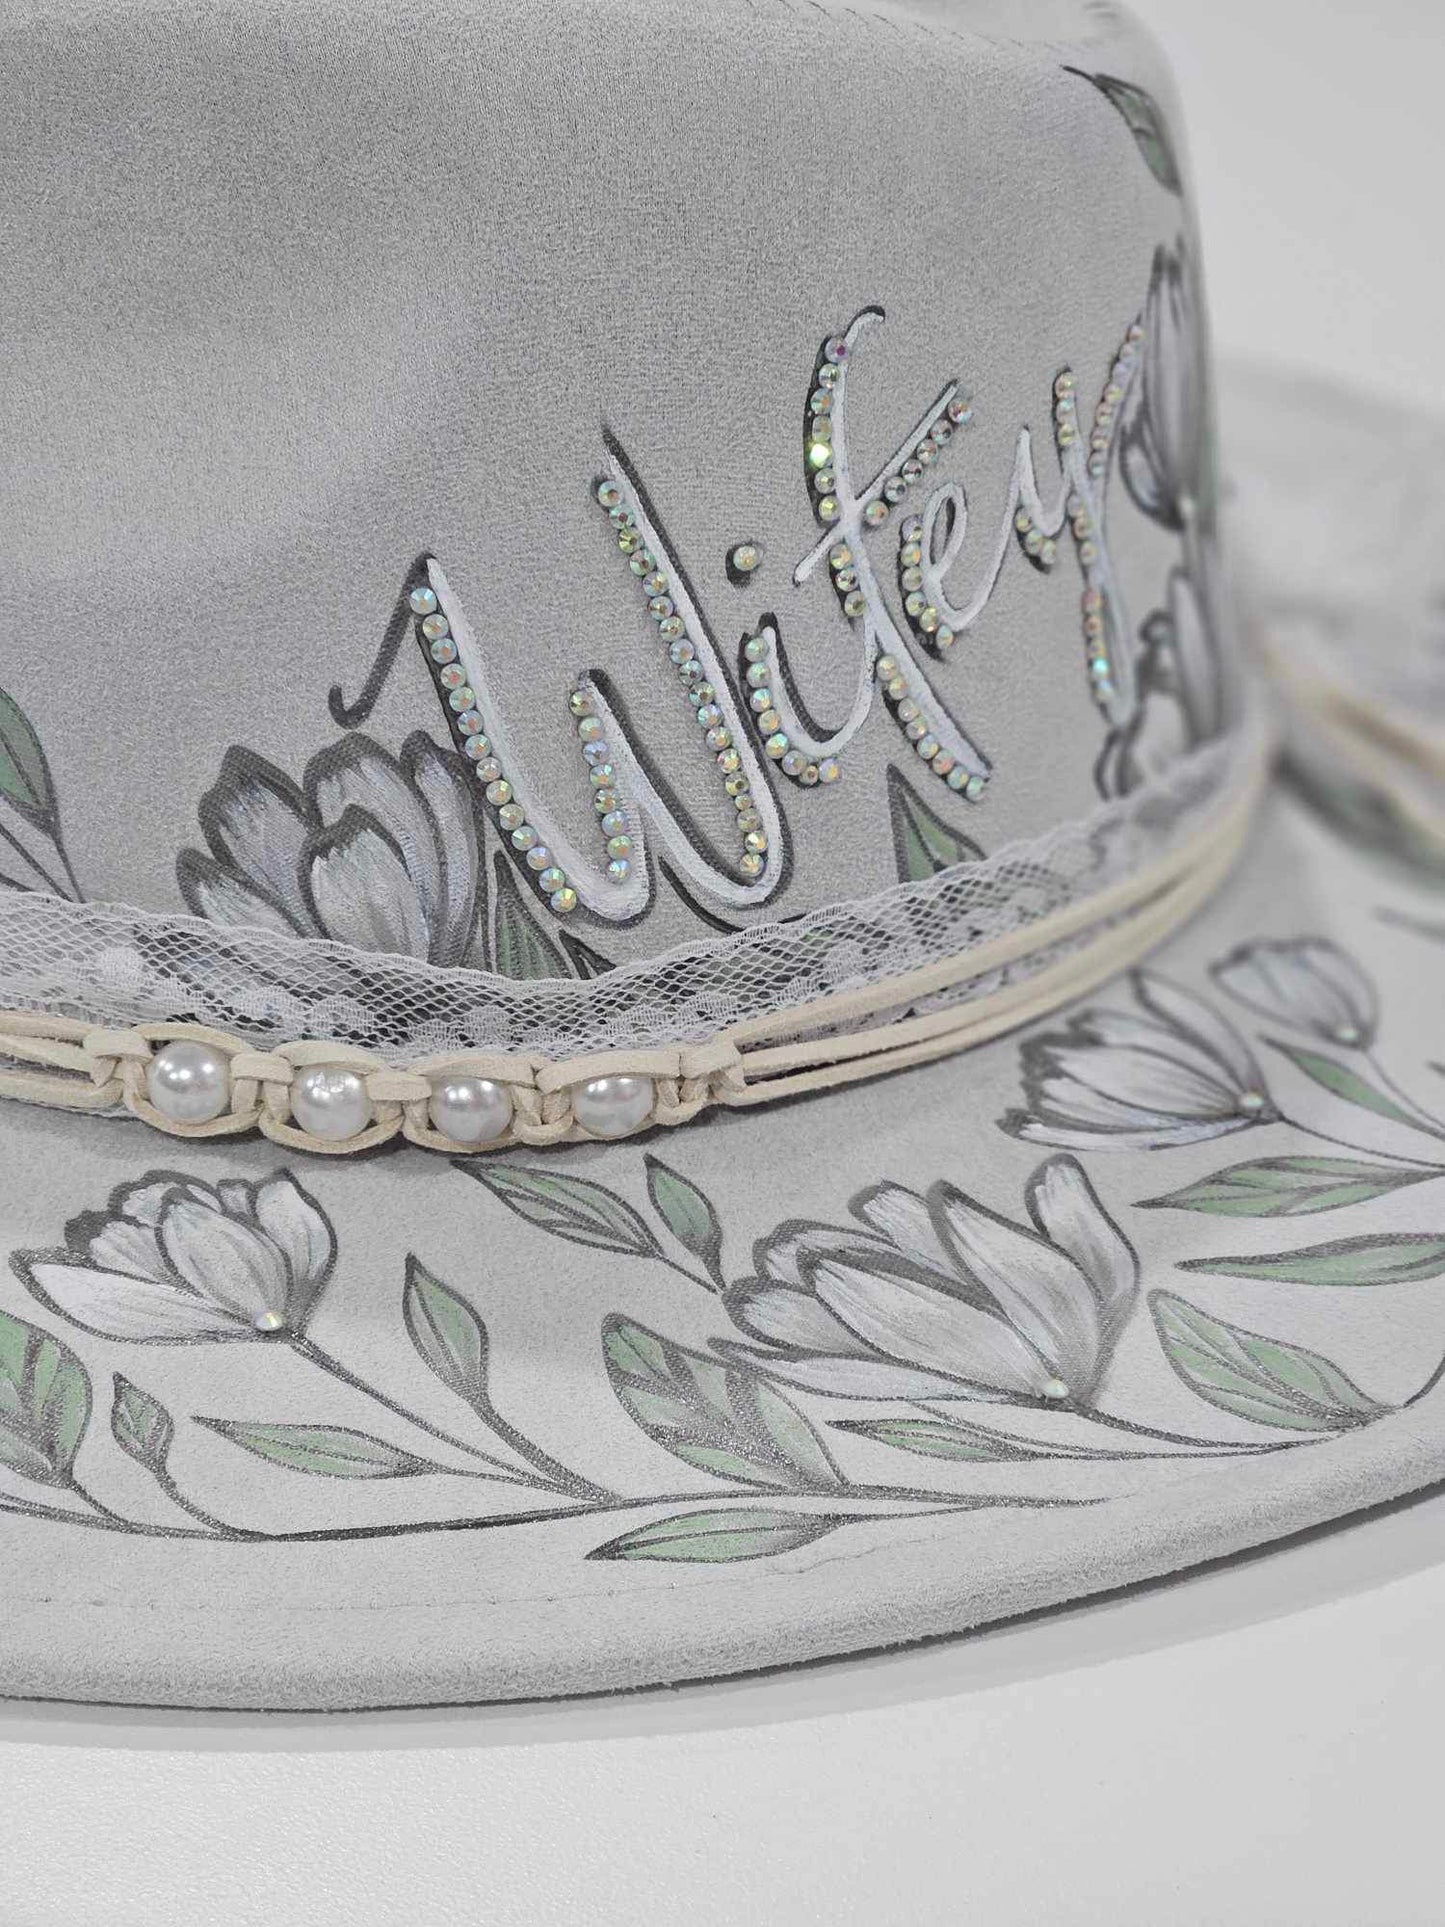 Wifey - Bridal Themed Burned Wide Brim Hat